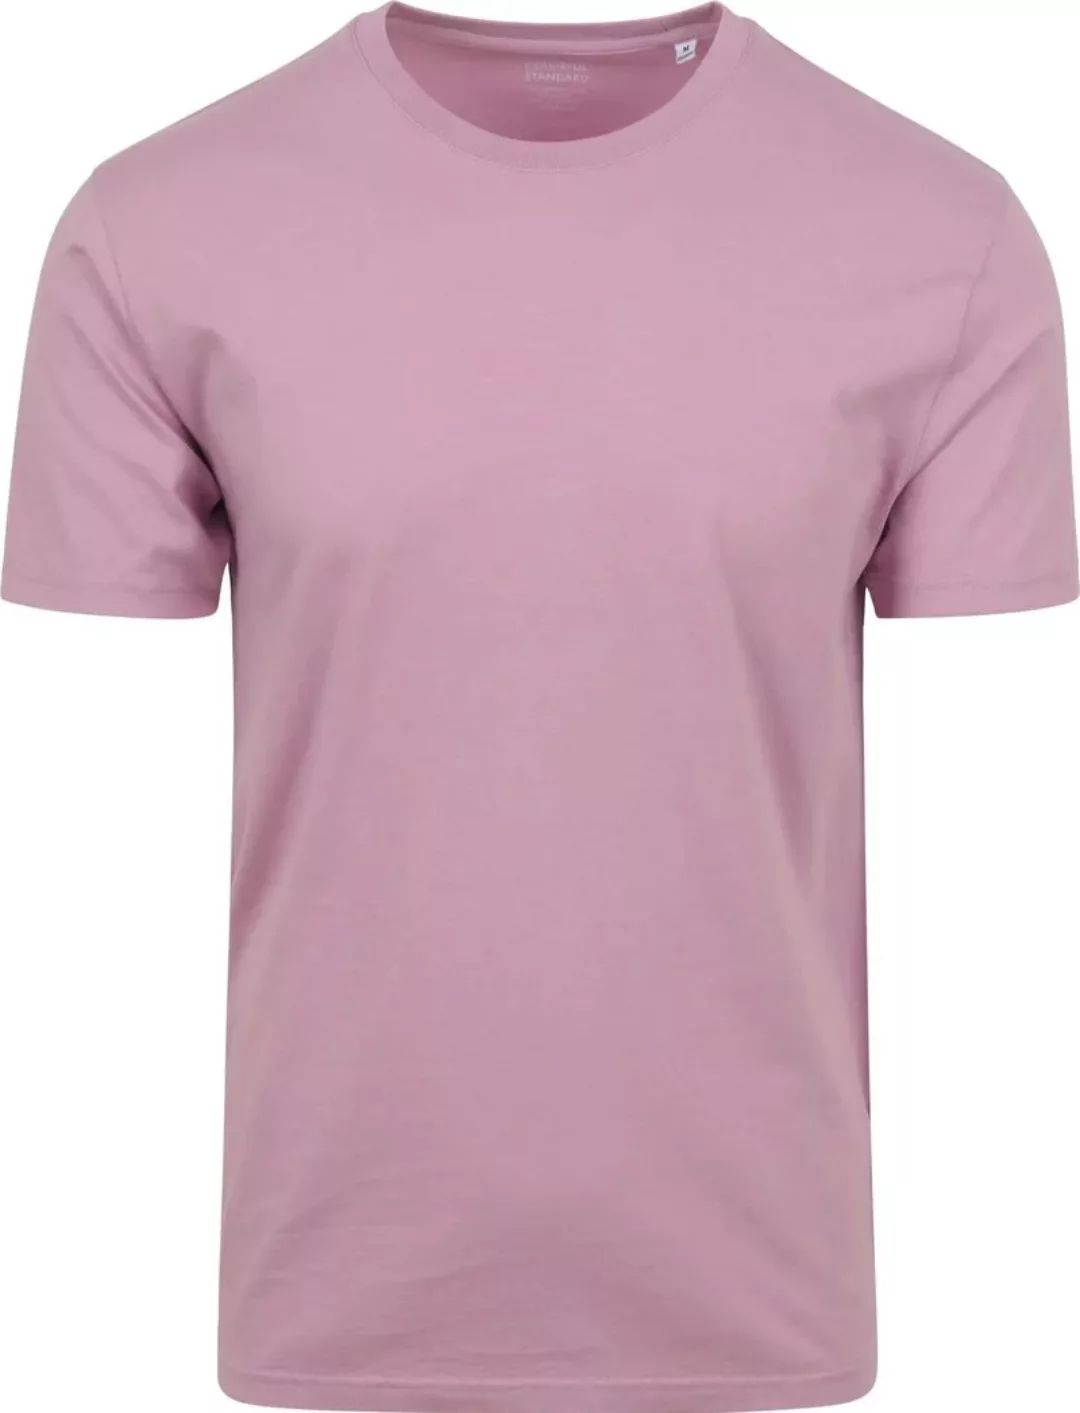 Colorful Standard T-shirt Cherry Lila - Größe M günstig online kaufen